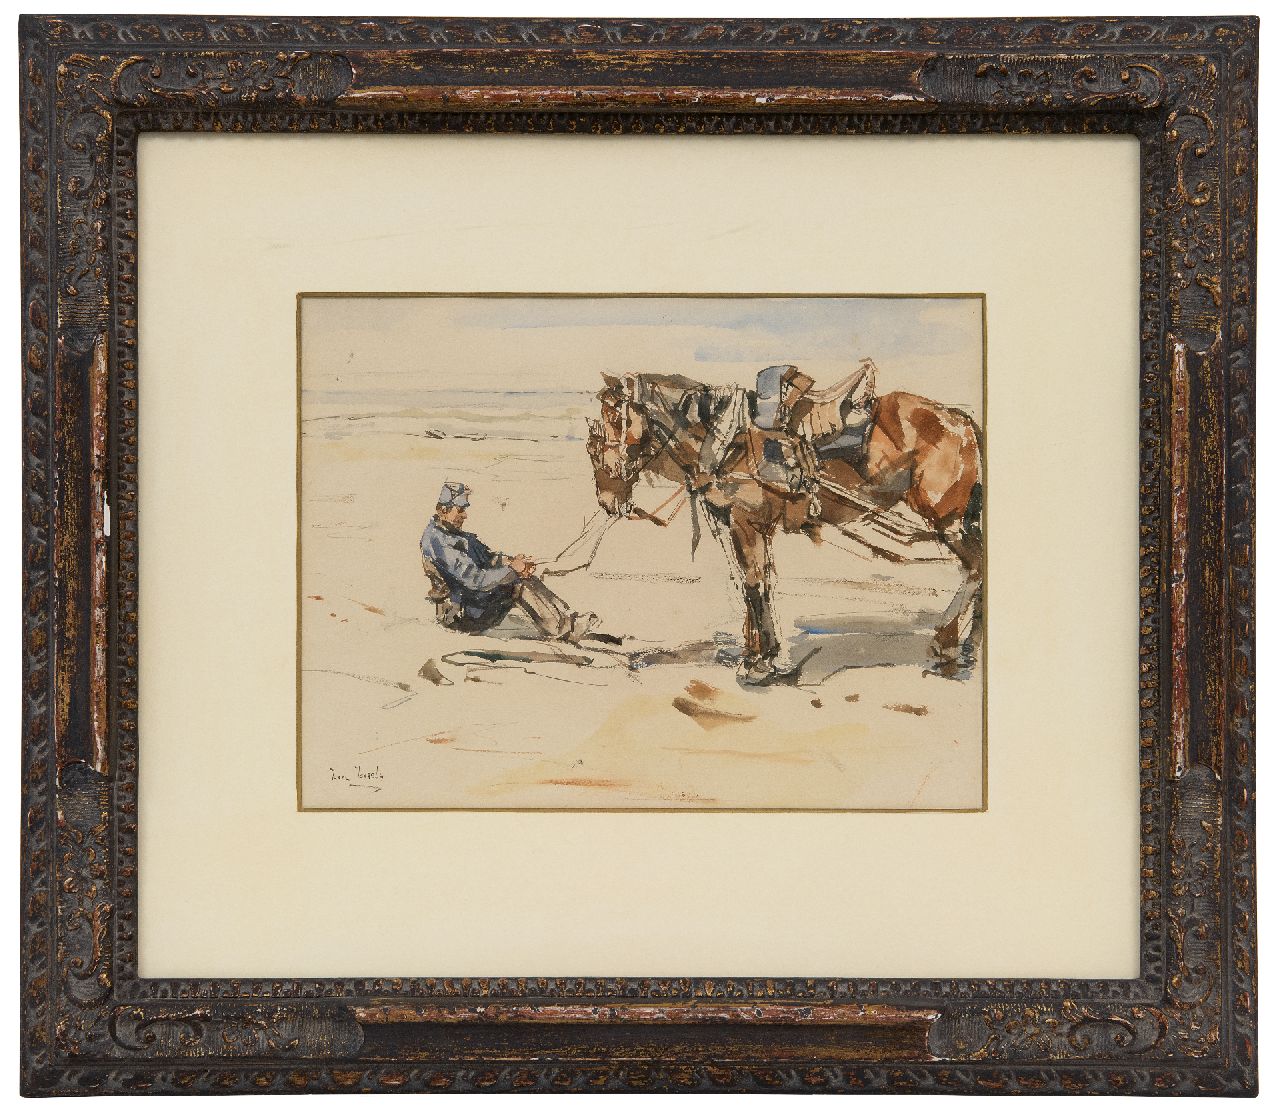 Israels I.L.  | 'Isaac' Lazarus Israels | Aquarellen en tekeningen te koop aangeboden | Een artillerist met paarden op het strand, aquarel op papier 19,4 x 26,0 cm, gesigneerd linksonder